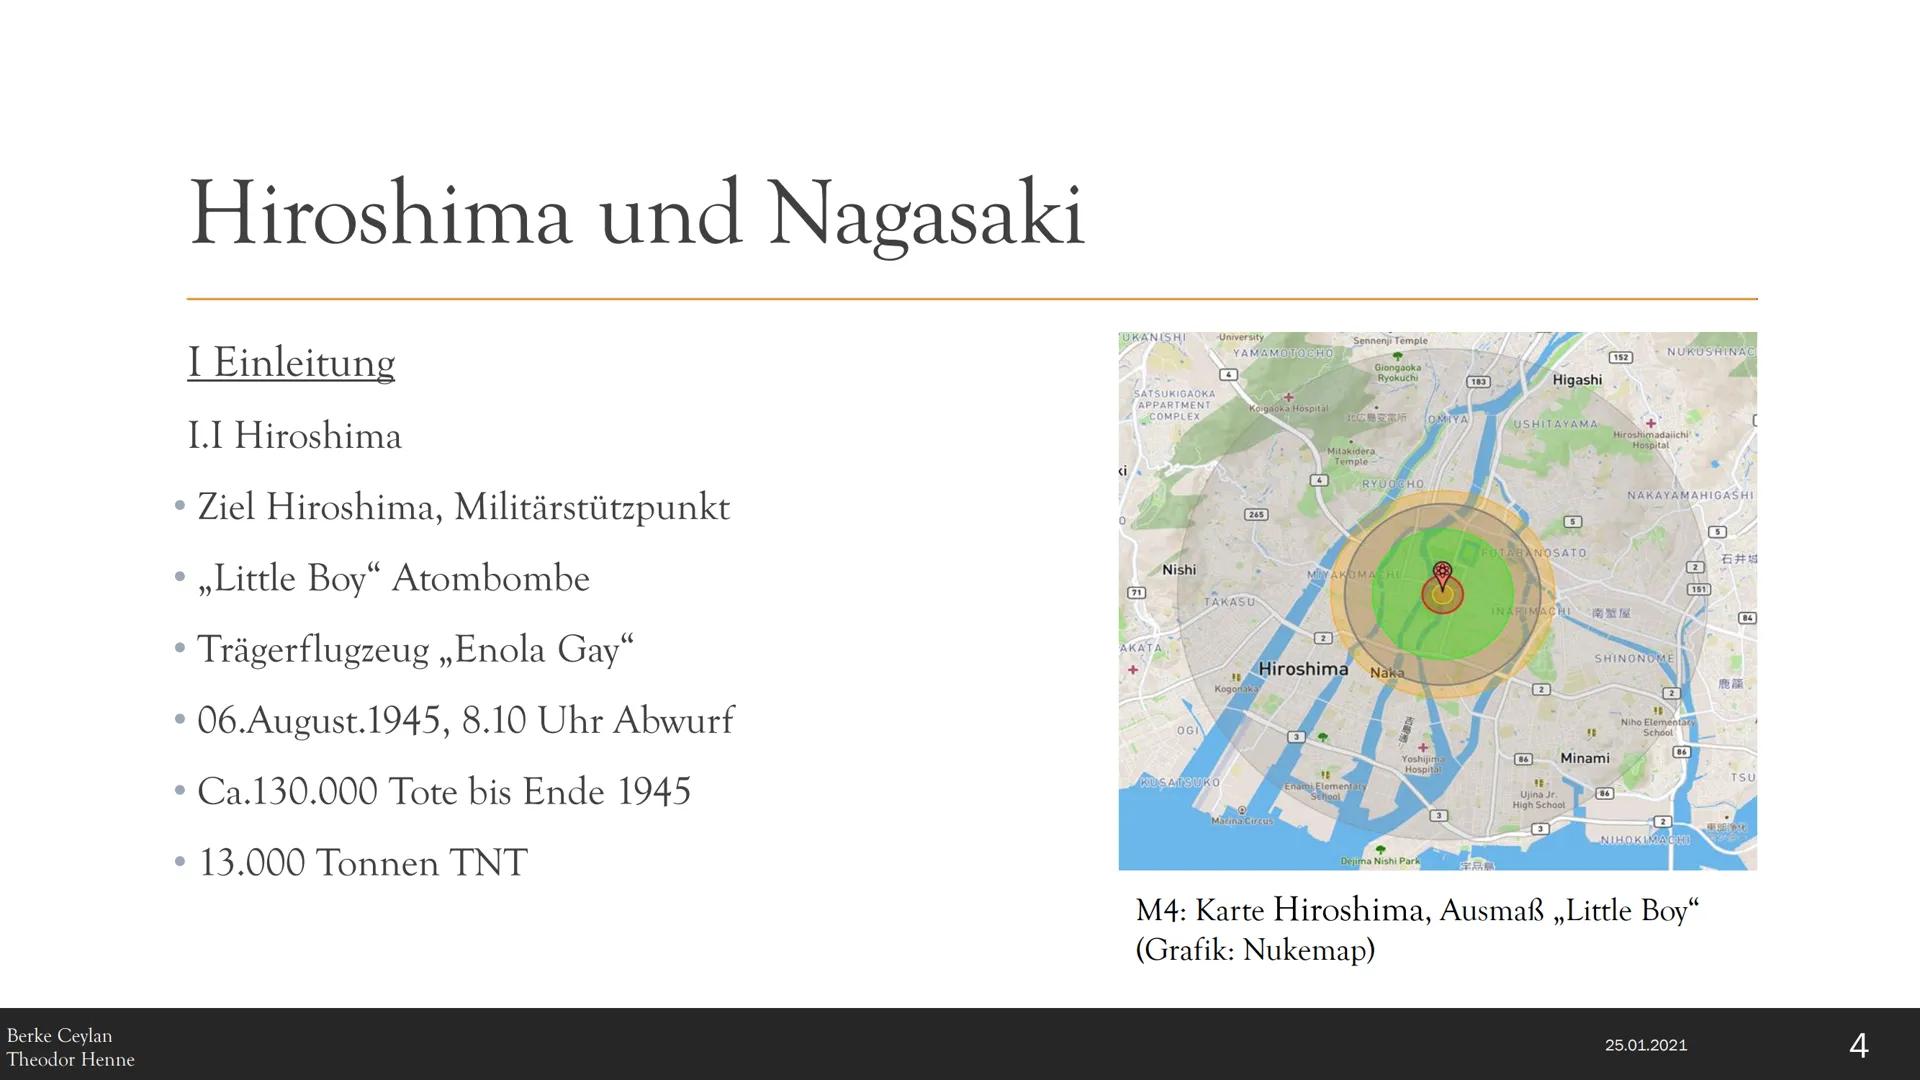 M1:Atompilz von ,,Fat Man"(Grafik aus
Wikipedaia",9.8.1945)
Hiroshima und
Nagasaki
Die Atombombenabwürfe über Japan vor 75
Jahren:
Ermordung